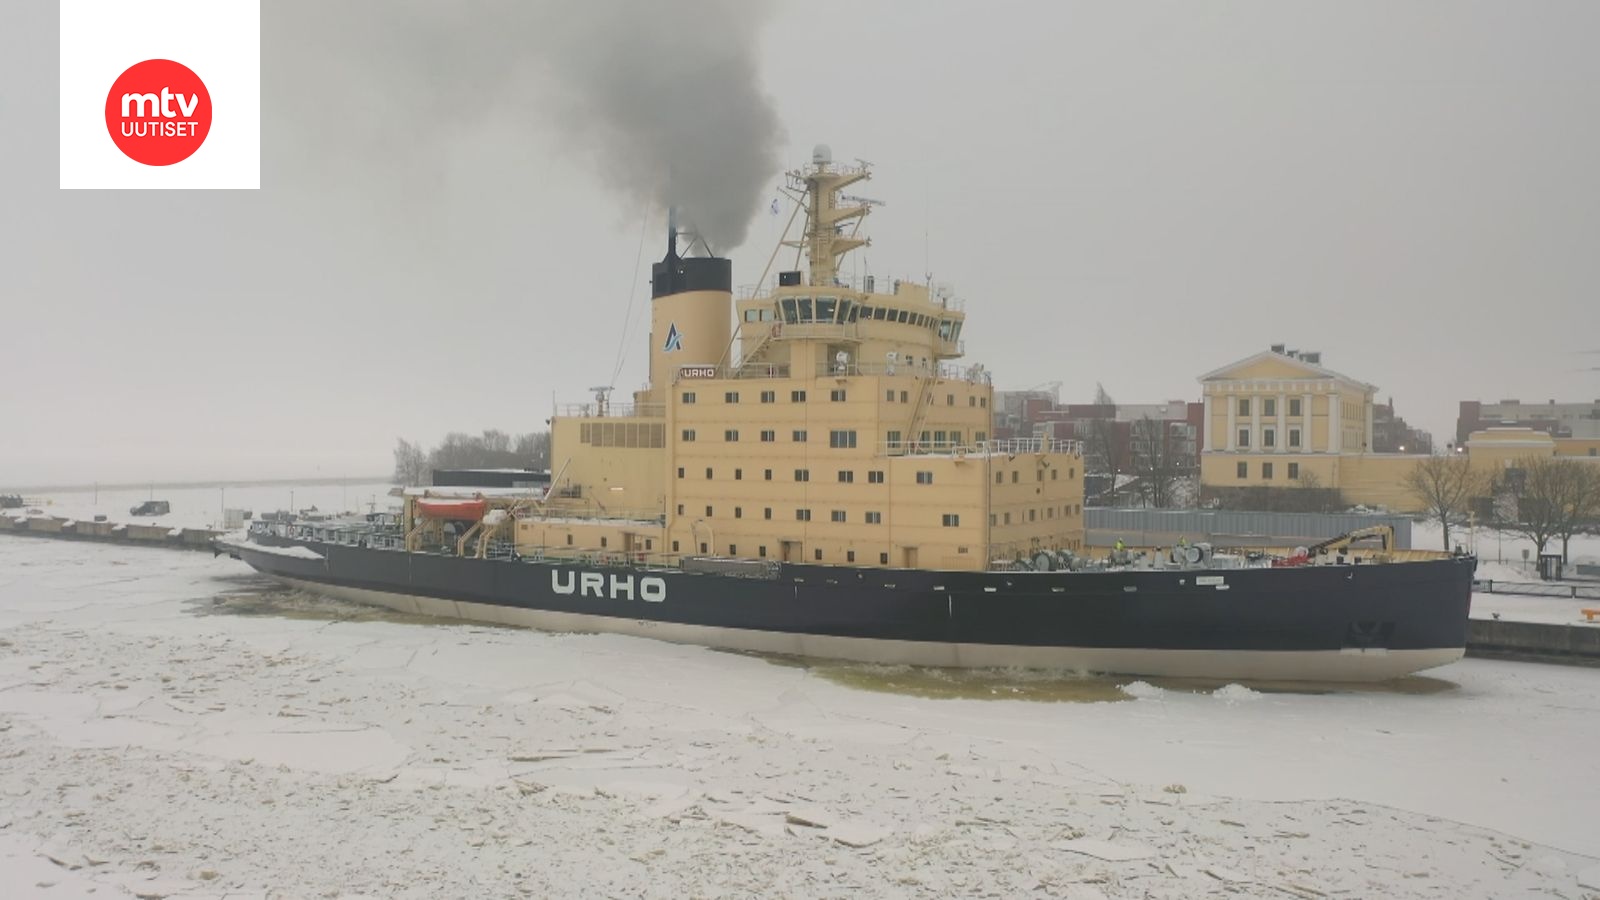 Urho Kekkosen mukaan nimetty Urho-jäänmurtaja irtautui satamasta – tältä  näyttää, kun 21 000 hevosvoiman kansallisaarre lähetetään matkaan -  